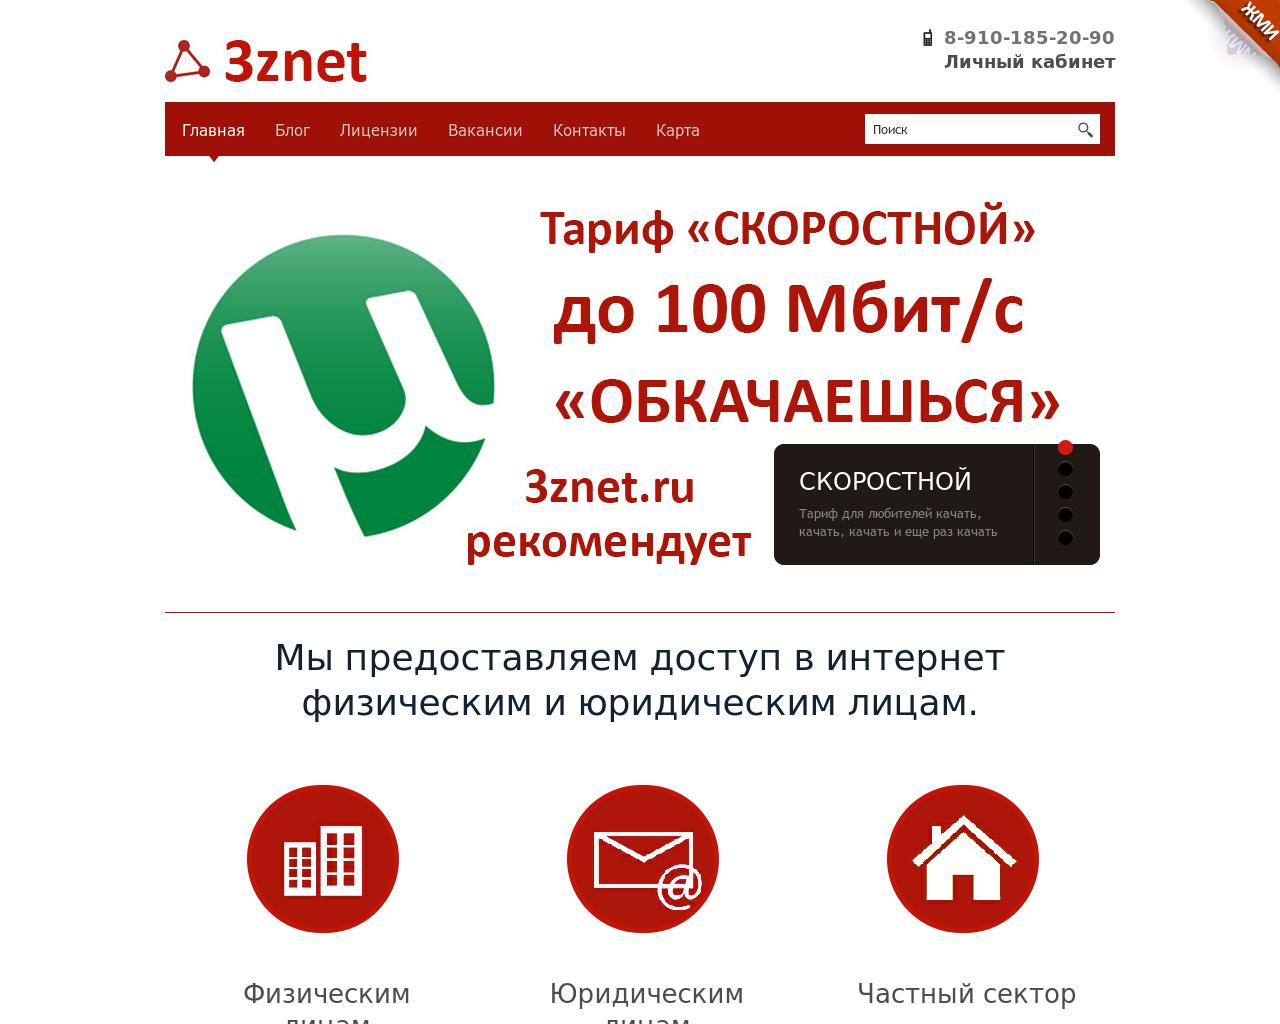 Изображение сайта 3znet.ru в разрешении 1280x1024